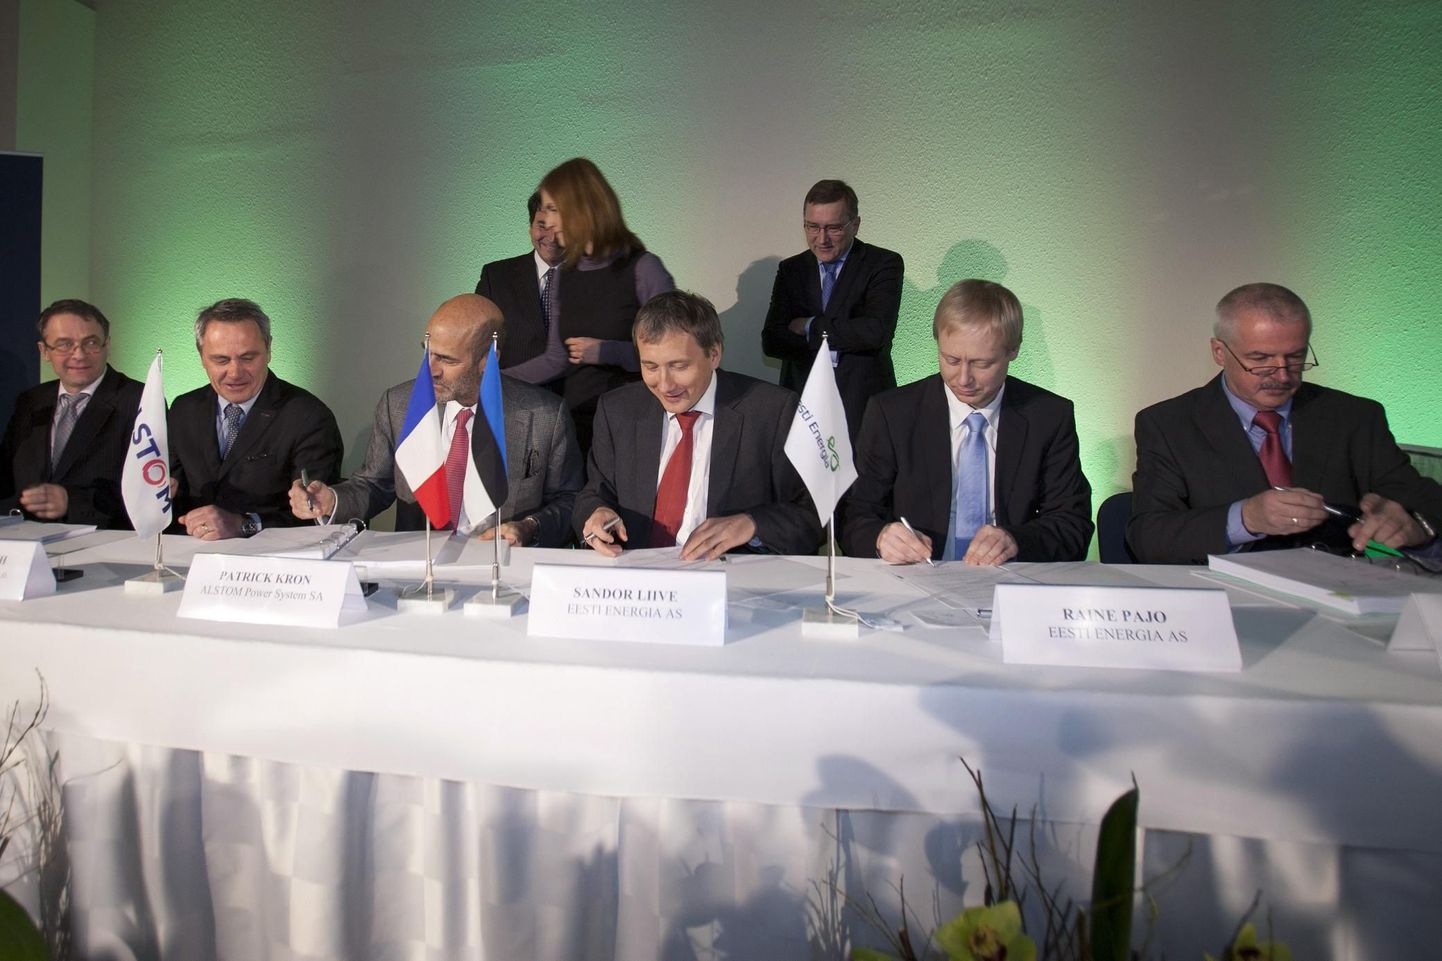 Uue põlevkivijaama ehitamine on erakordselt suur investeering. Seetõttu ei varjanud asjaosalised rõõmu, kui Eesti Energia allkirjastas tänavu jaanuaris pidulikult lepingu Prantsuse kontserniga Alstom.